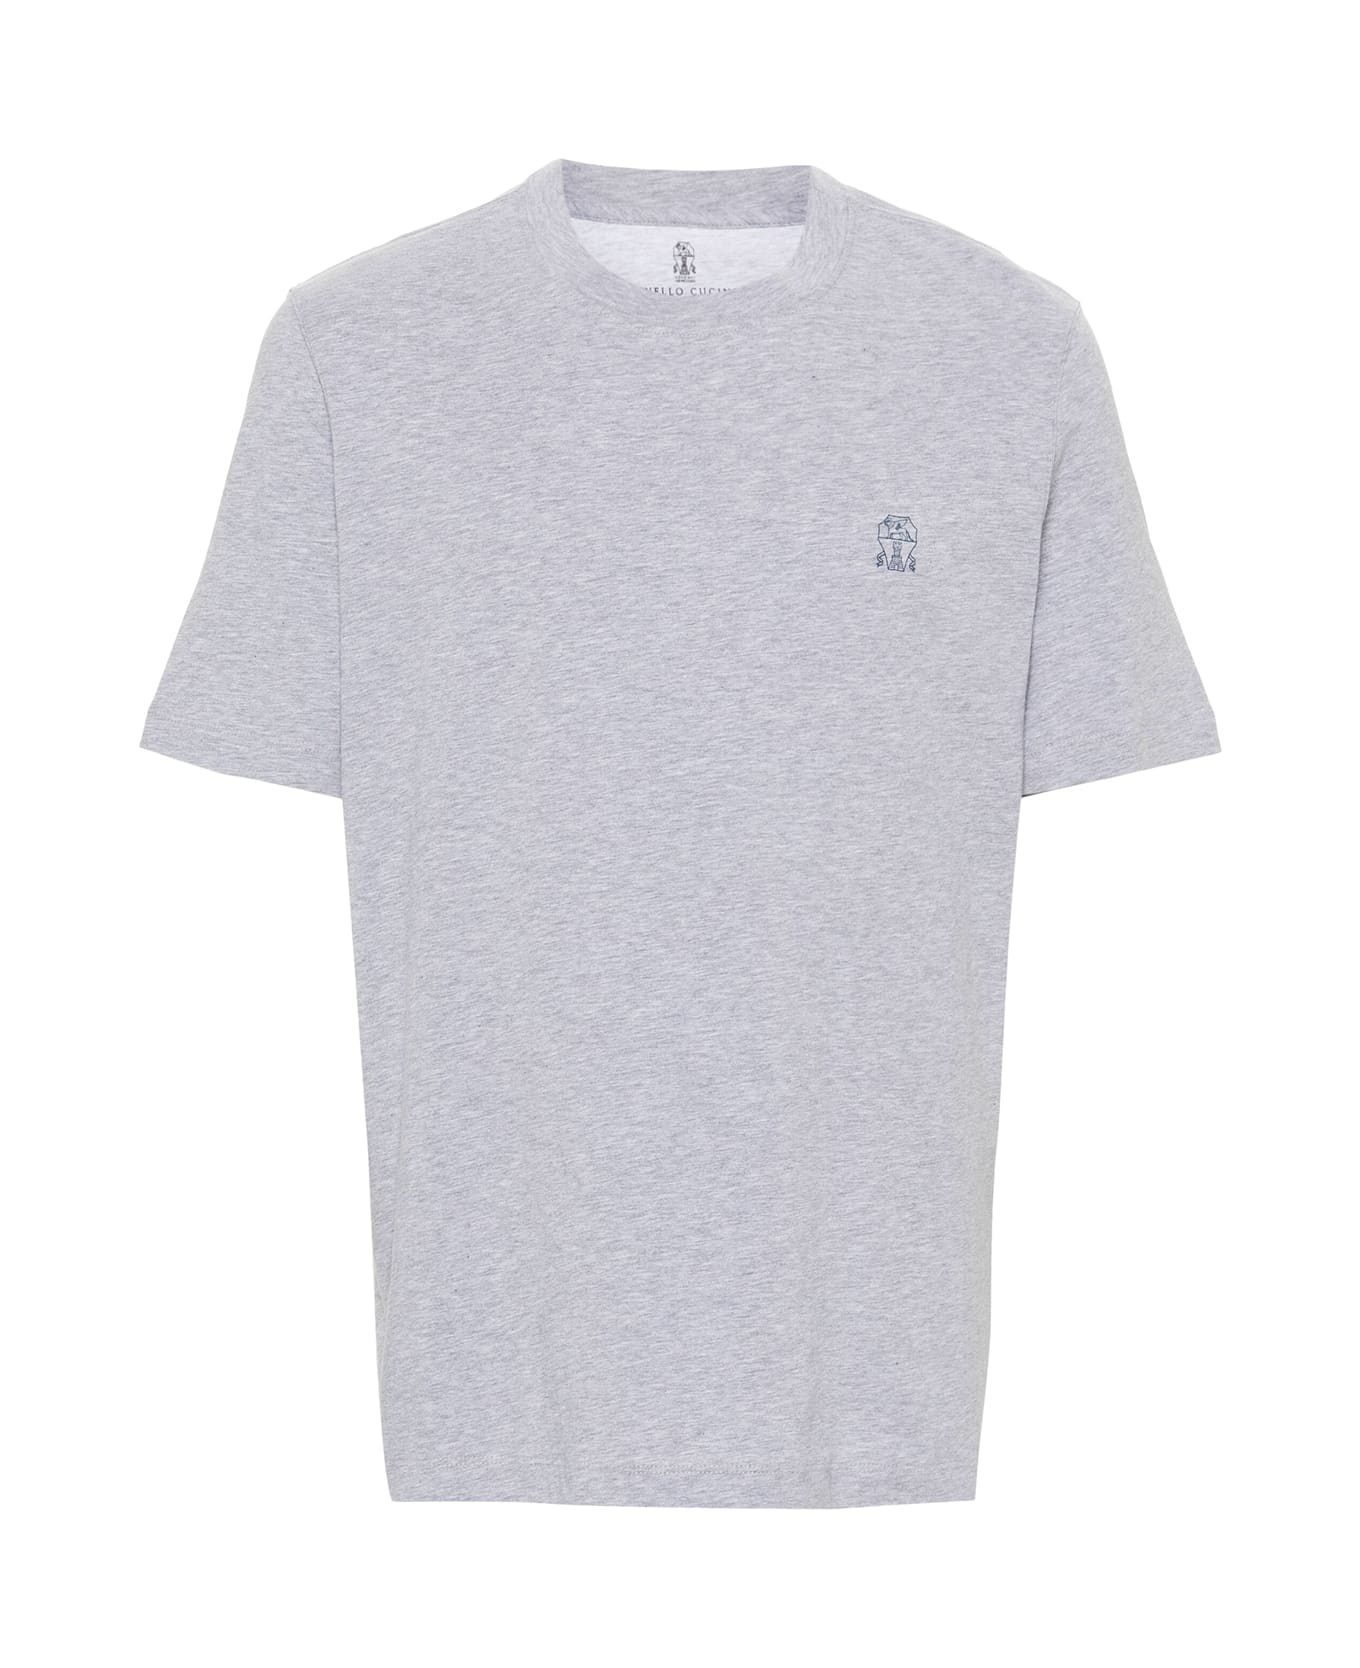 Brunello Cucinelli T-shirt - Grey シャツ